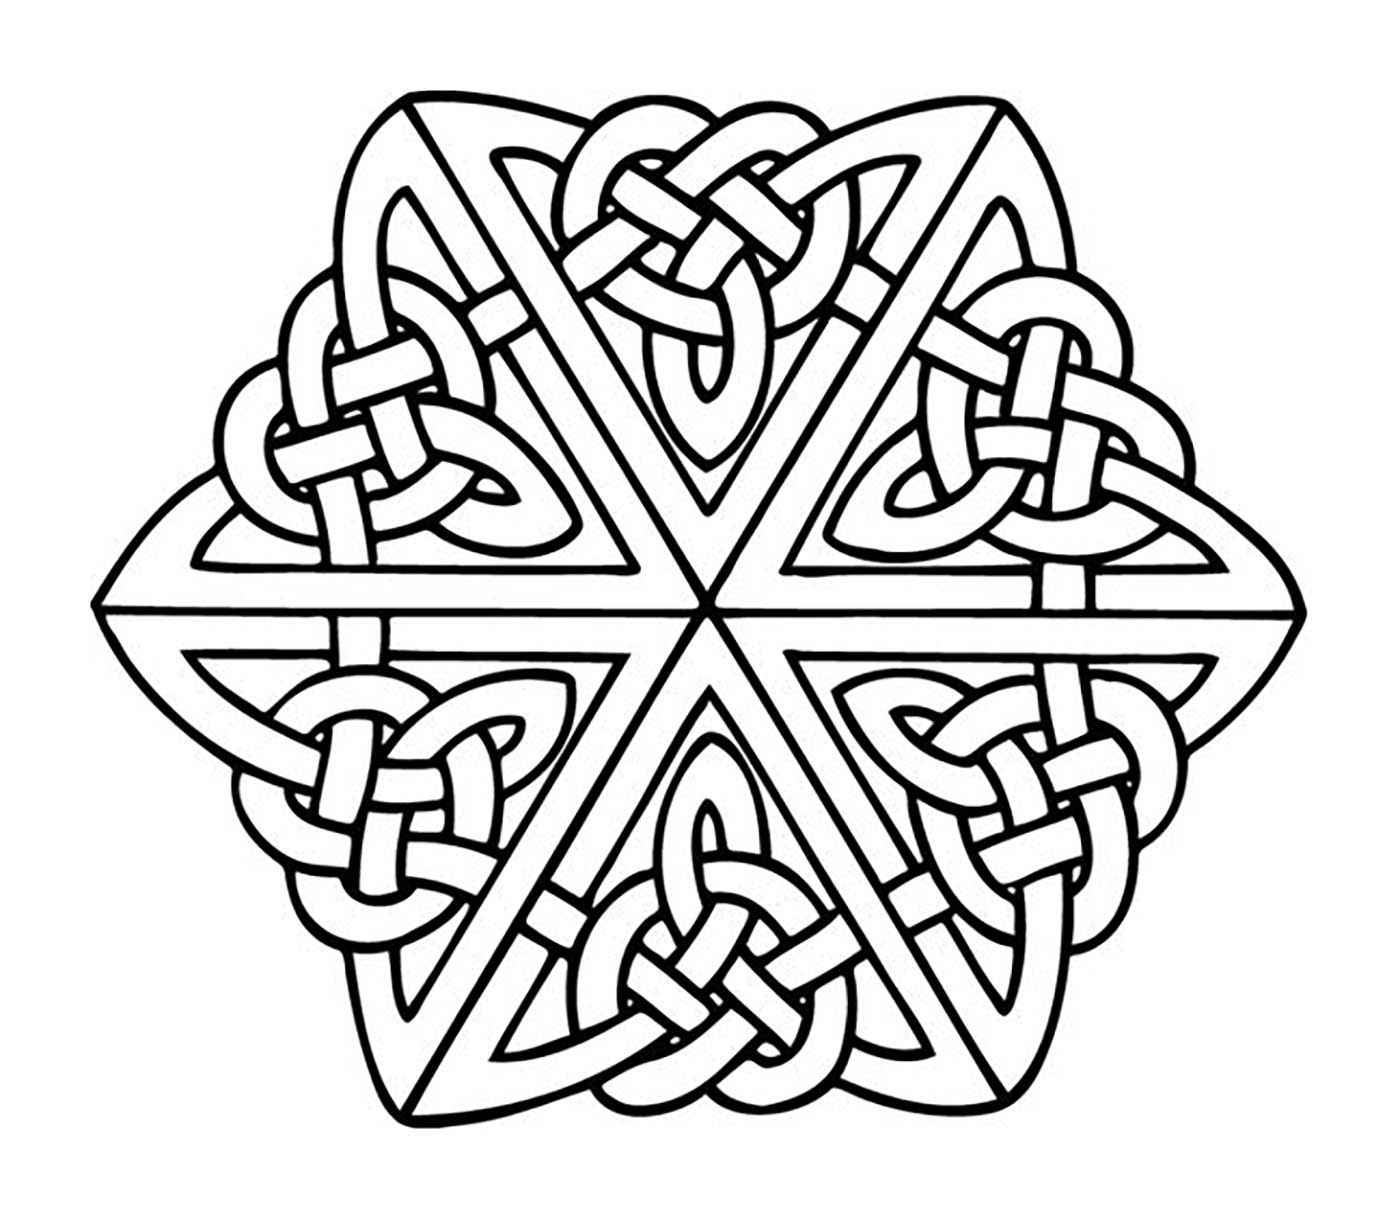 Wenn Sie ein 'keltisches' Mandala suchen, das nicht zu kompliziert zum Ausmalen ist, aber trotzdem einen relativen Schwierigkeitsgrad hat, ist dieses hier perfekt für Sie.